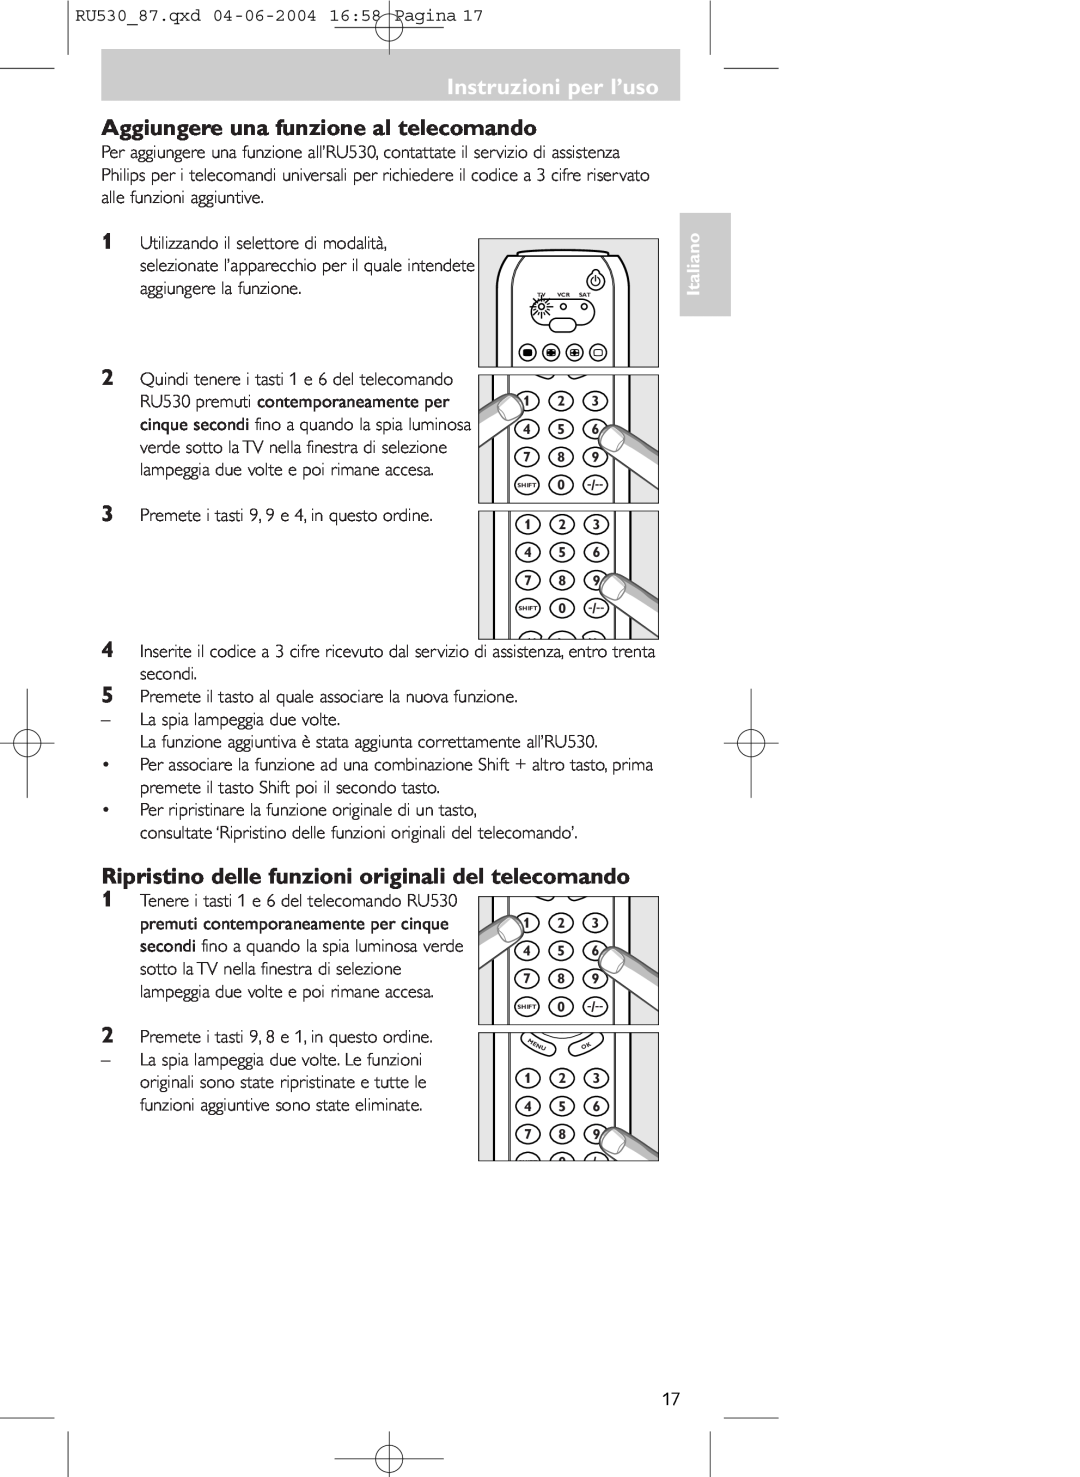 Philips SBC RU 530/87U manual Aggiungere una funzione al telecomando, Tenere i tasti 1 e 6 del telecomando RU530, Italiano 